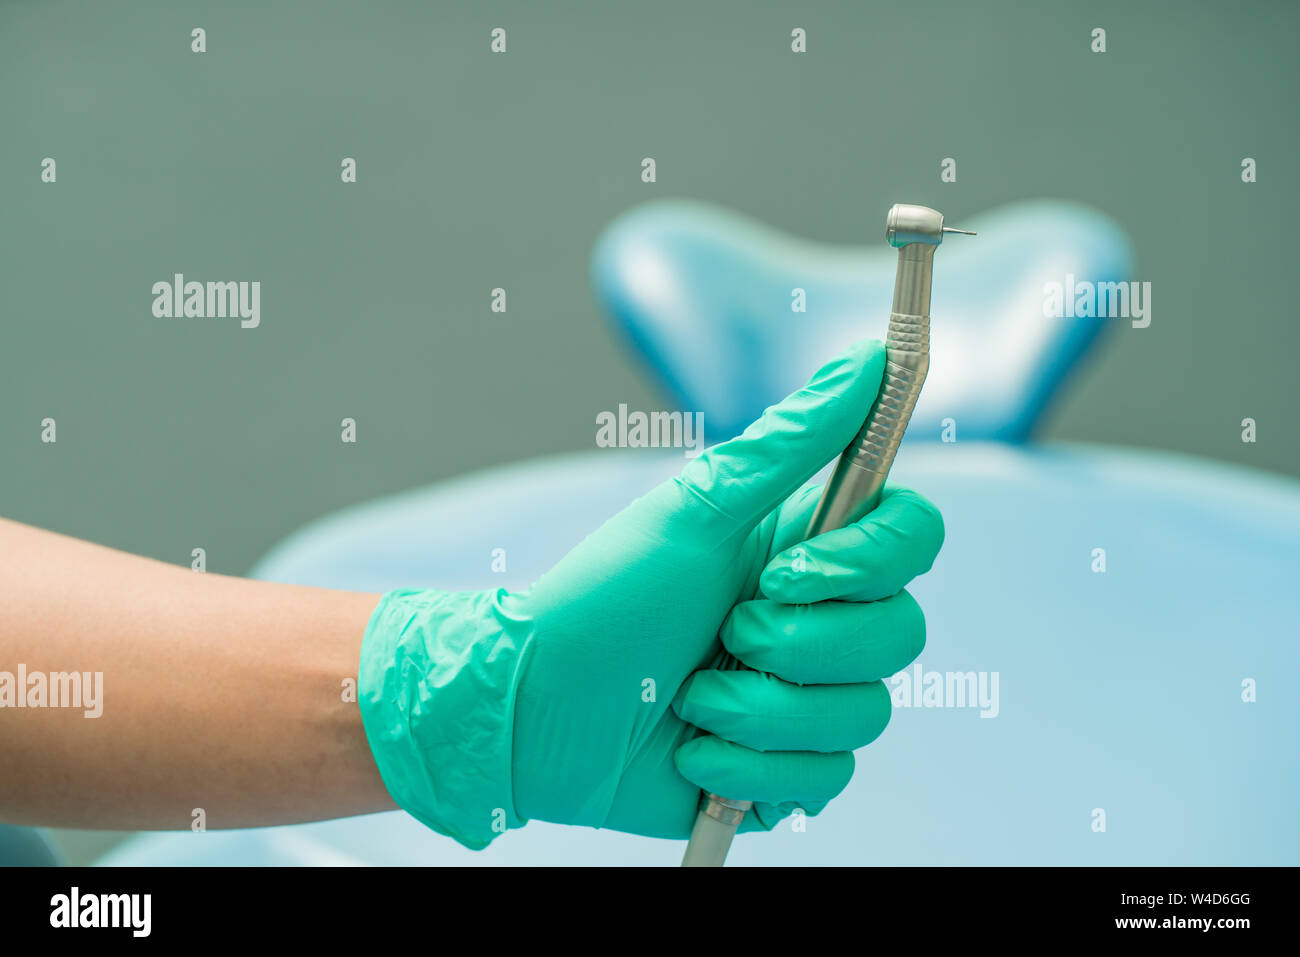 Dentista mano sujetando la herramienta dental para limpiar la cavidad oral, sarro perforar Fotografía de stock - Alamy